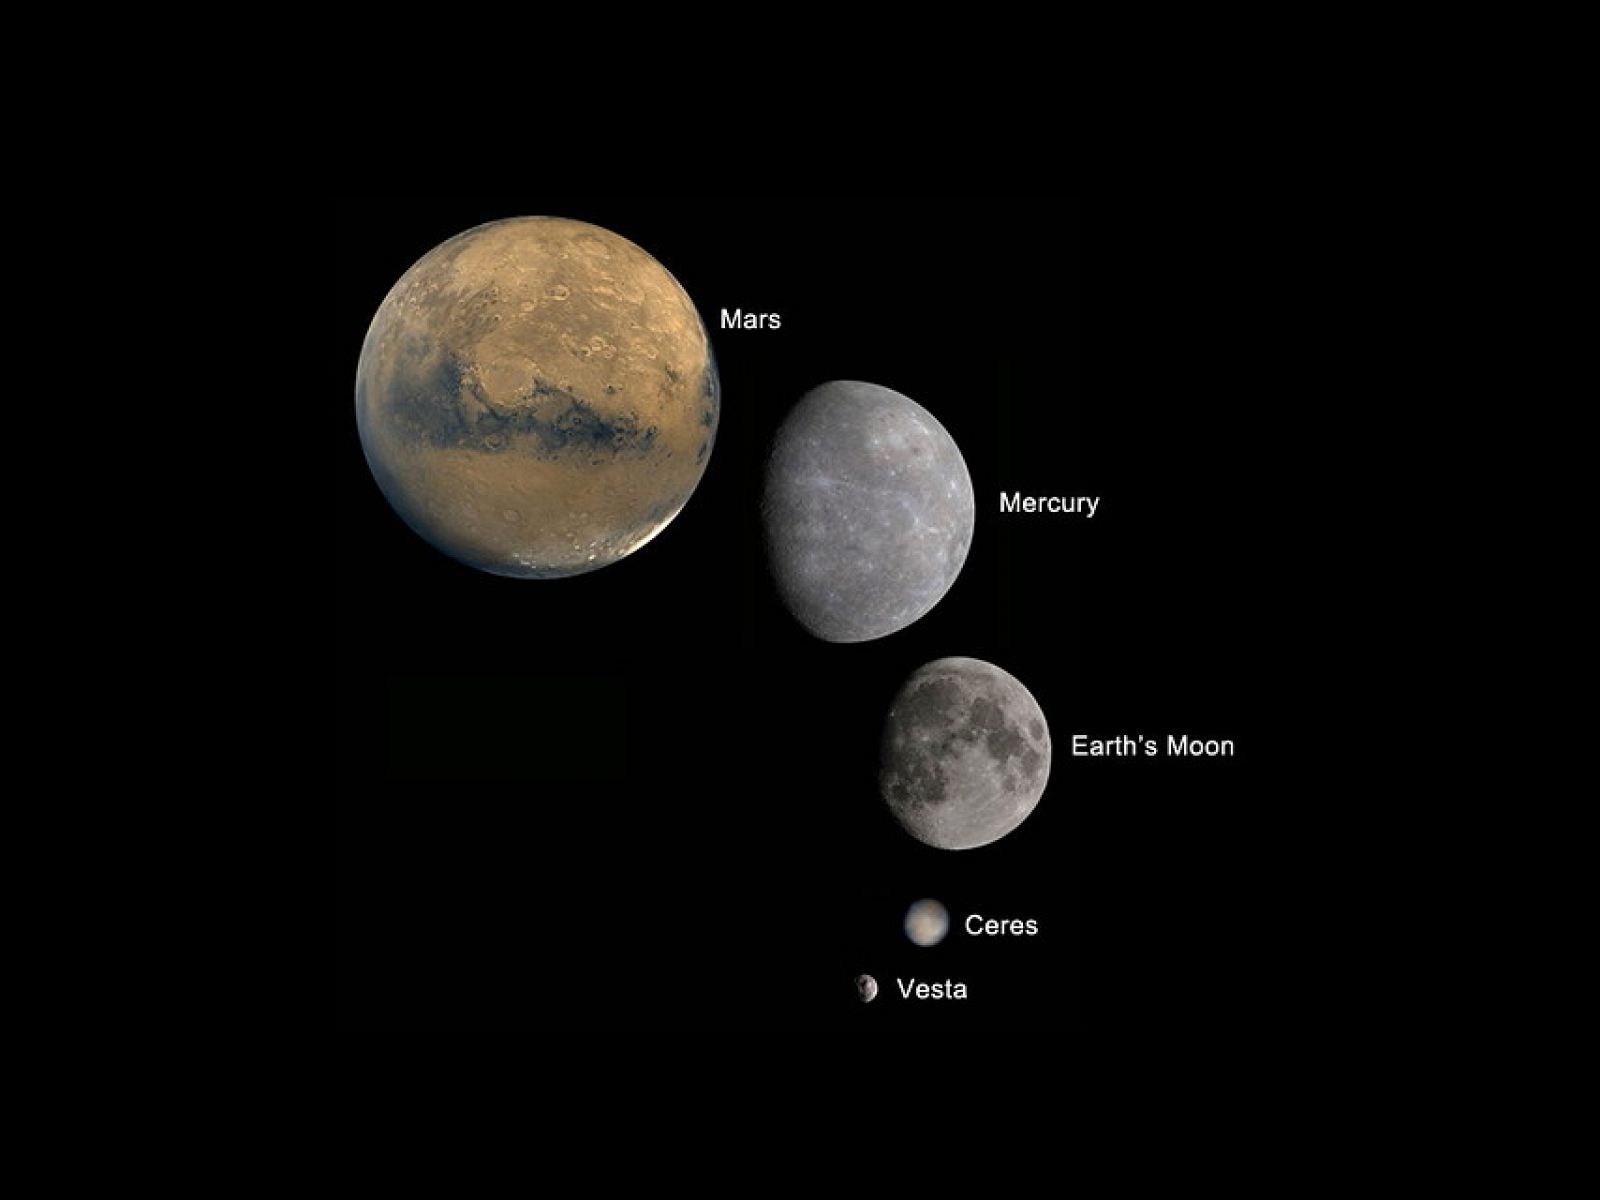 Vesta se parece más a otros planetas y satélites que a un asteroide